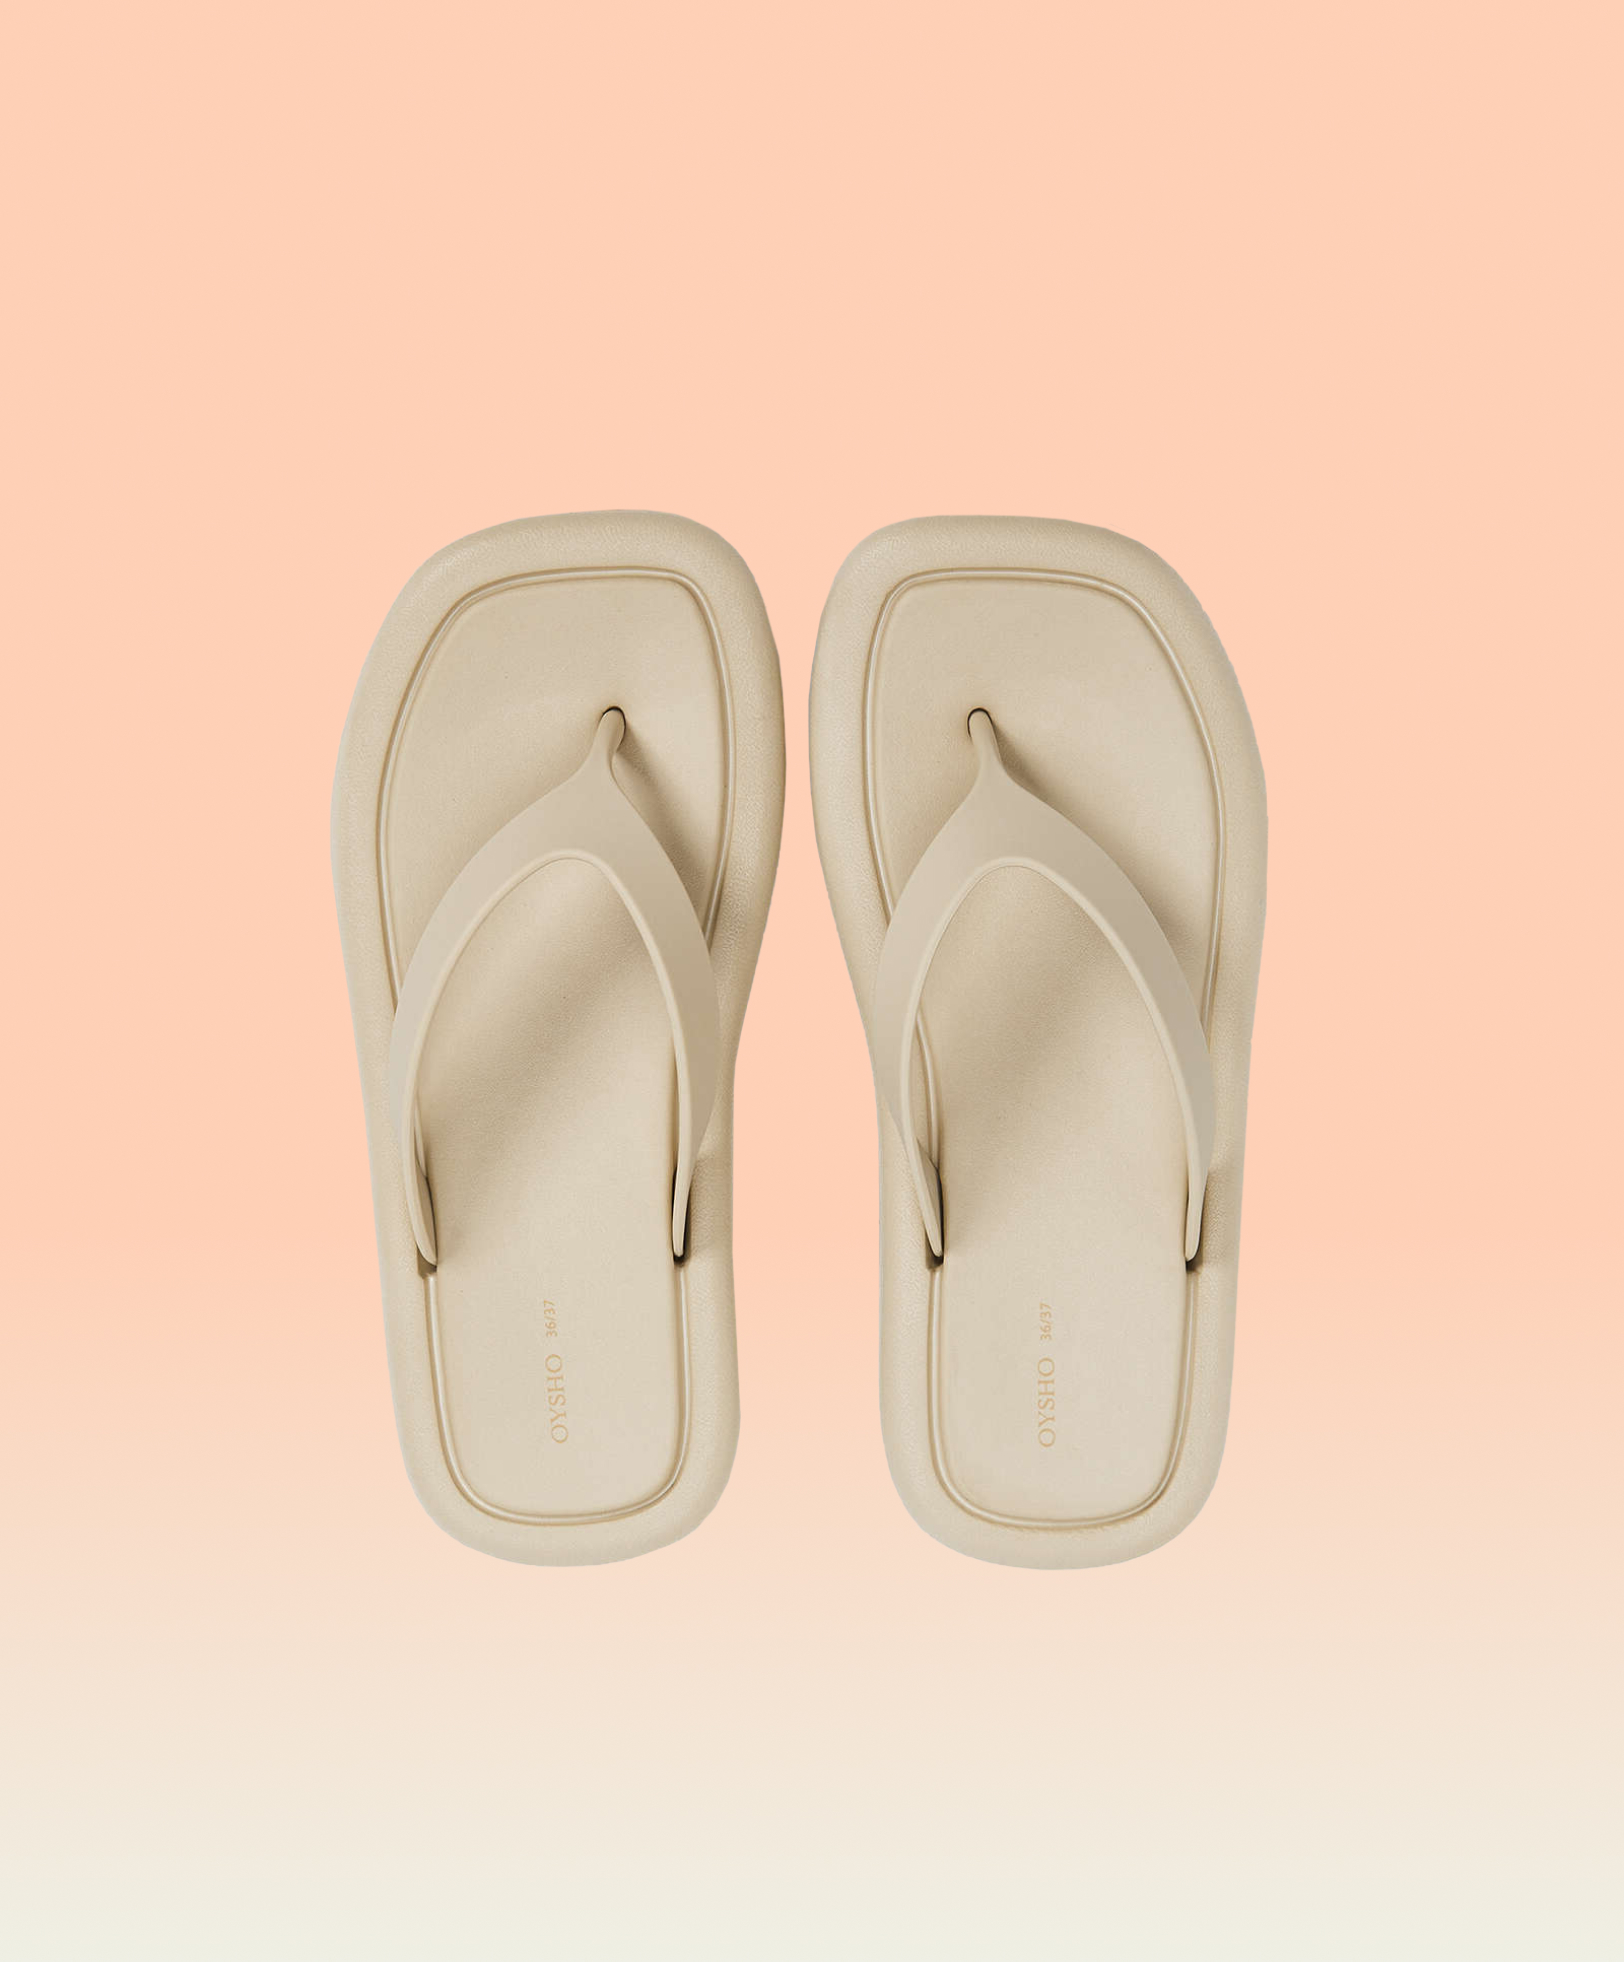 Maxi-sole beach sandals